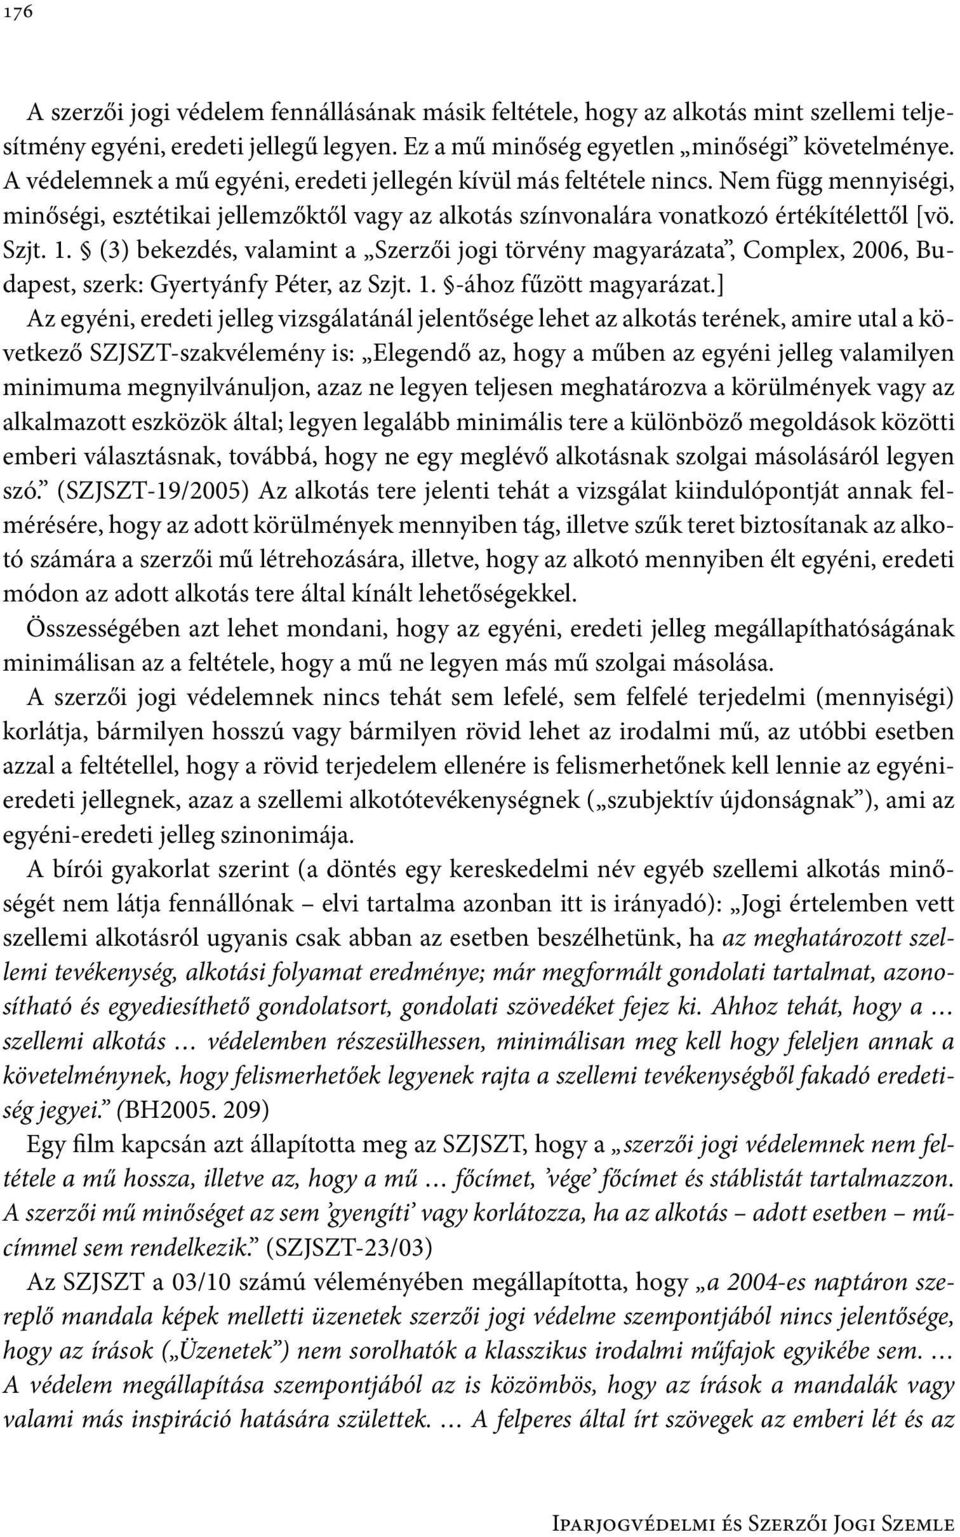 (3) bekezdés, valamint a Szerzői jogi törvény magyarázata, Complex, 2006, Budapest, szerk: Gyertyánfy Péter, az Szjt. 1. -ához fűzött magyarázat.